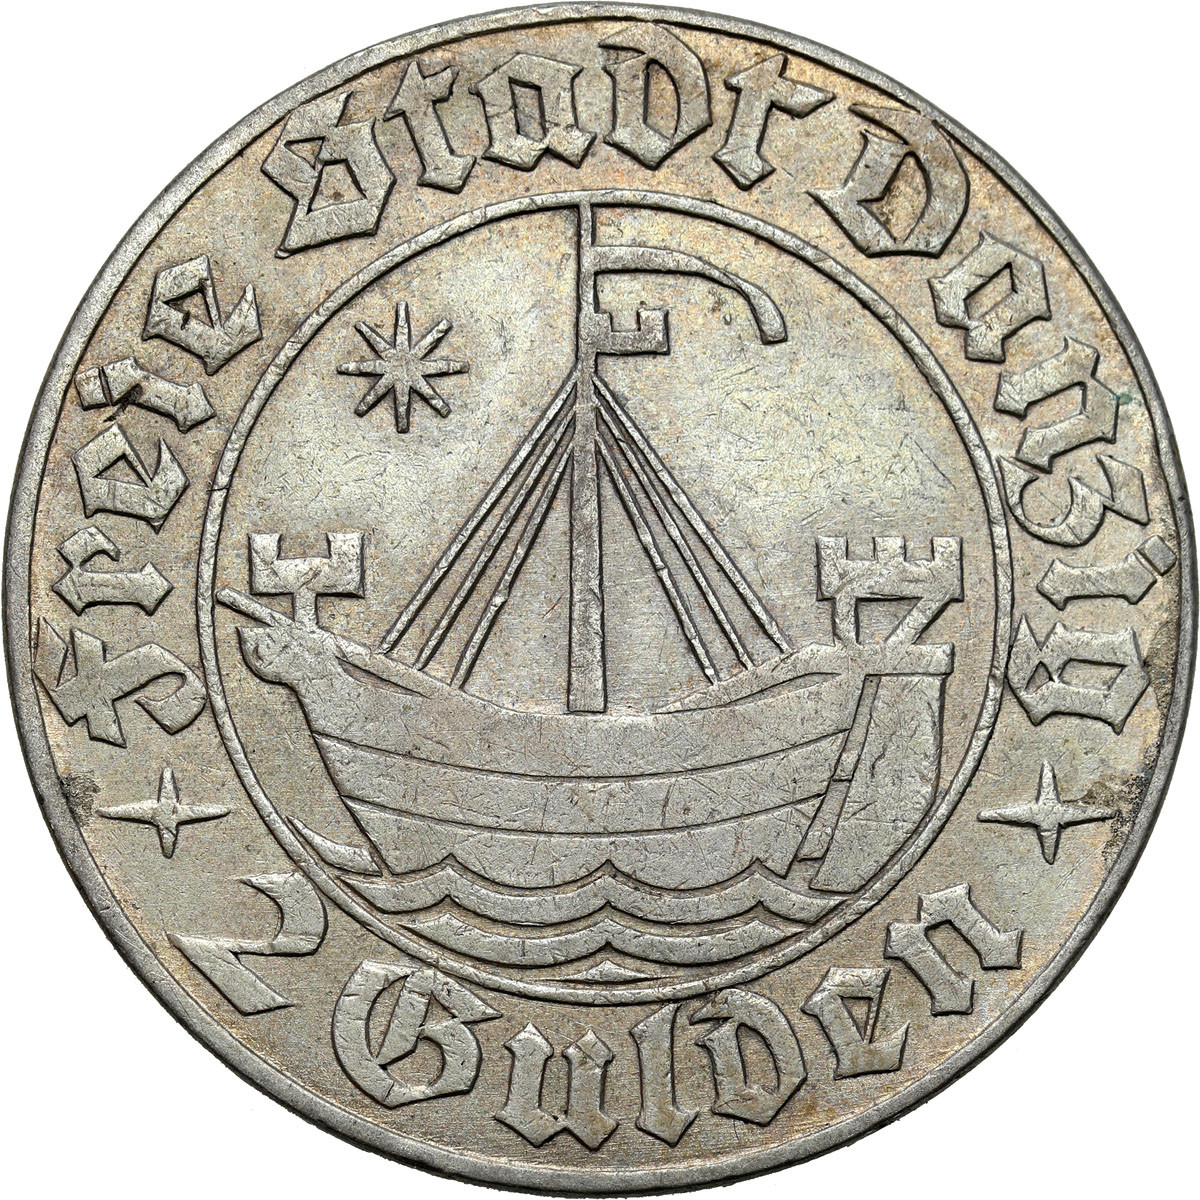 Wolne Miasto Gdańsk/Danzig. 2 Guldeny 1932 Koga